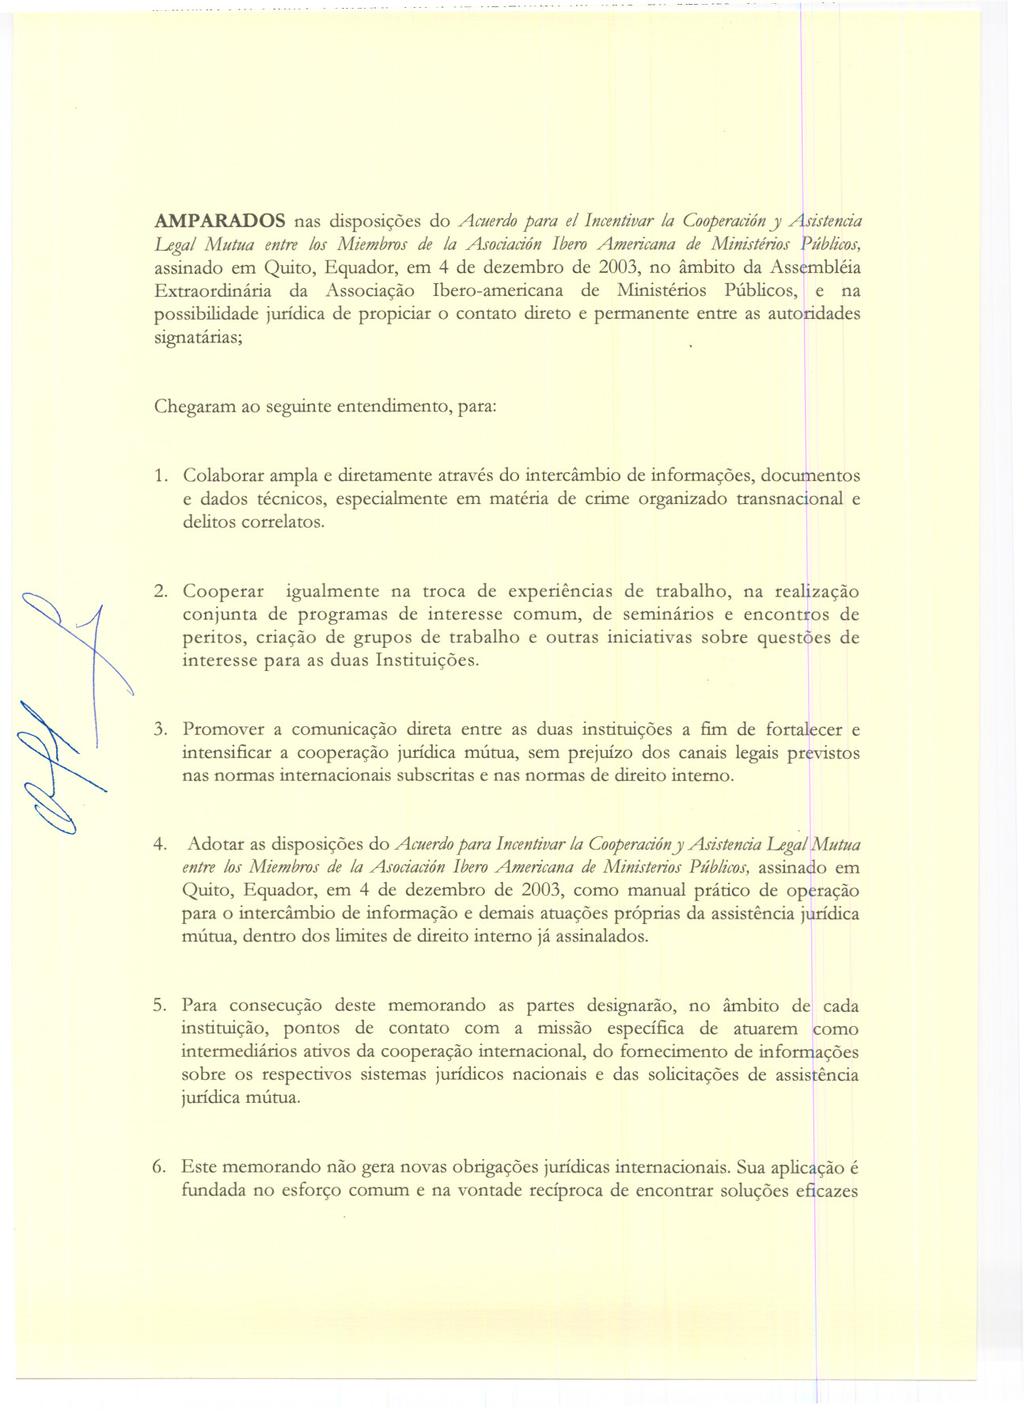 AMPARADOS nas disposí<;6es do Acuerdo para el Incentivar la Cooperacióny Asistencia Legal Mutua entre los Miembros de la Asociación Ibero Americana de Ministérios Públicos, assinado em Quito,